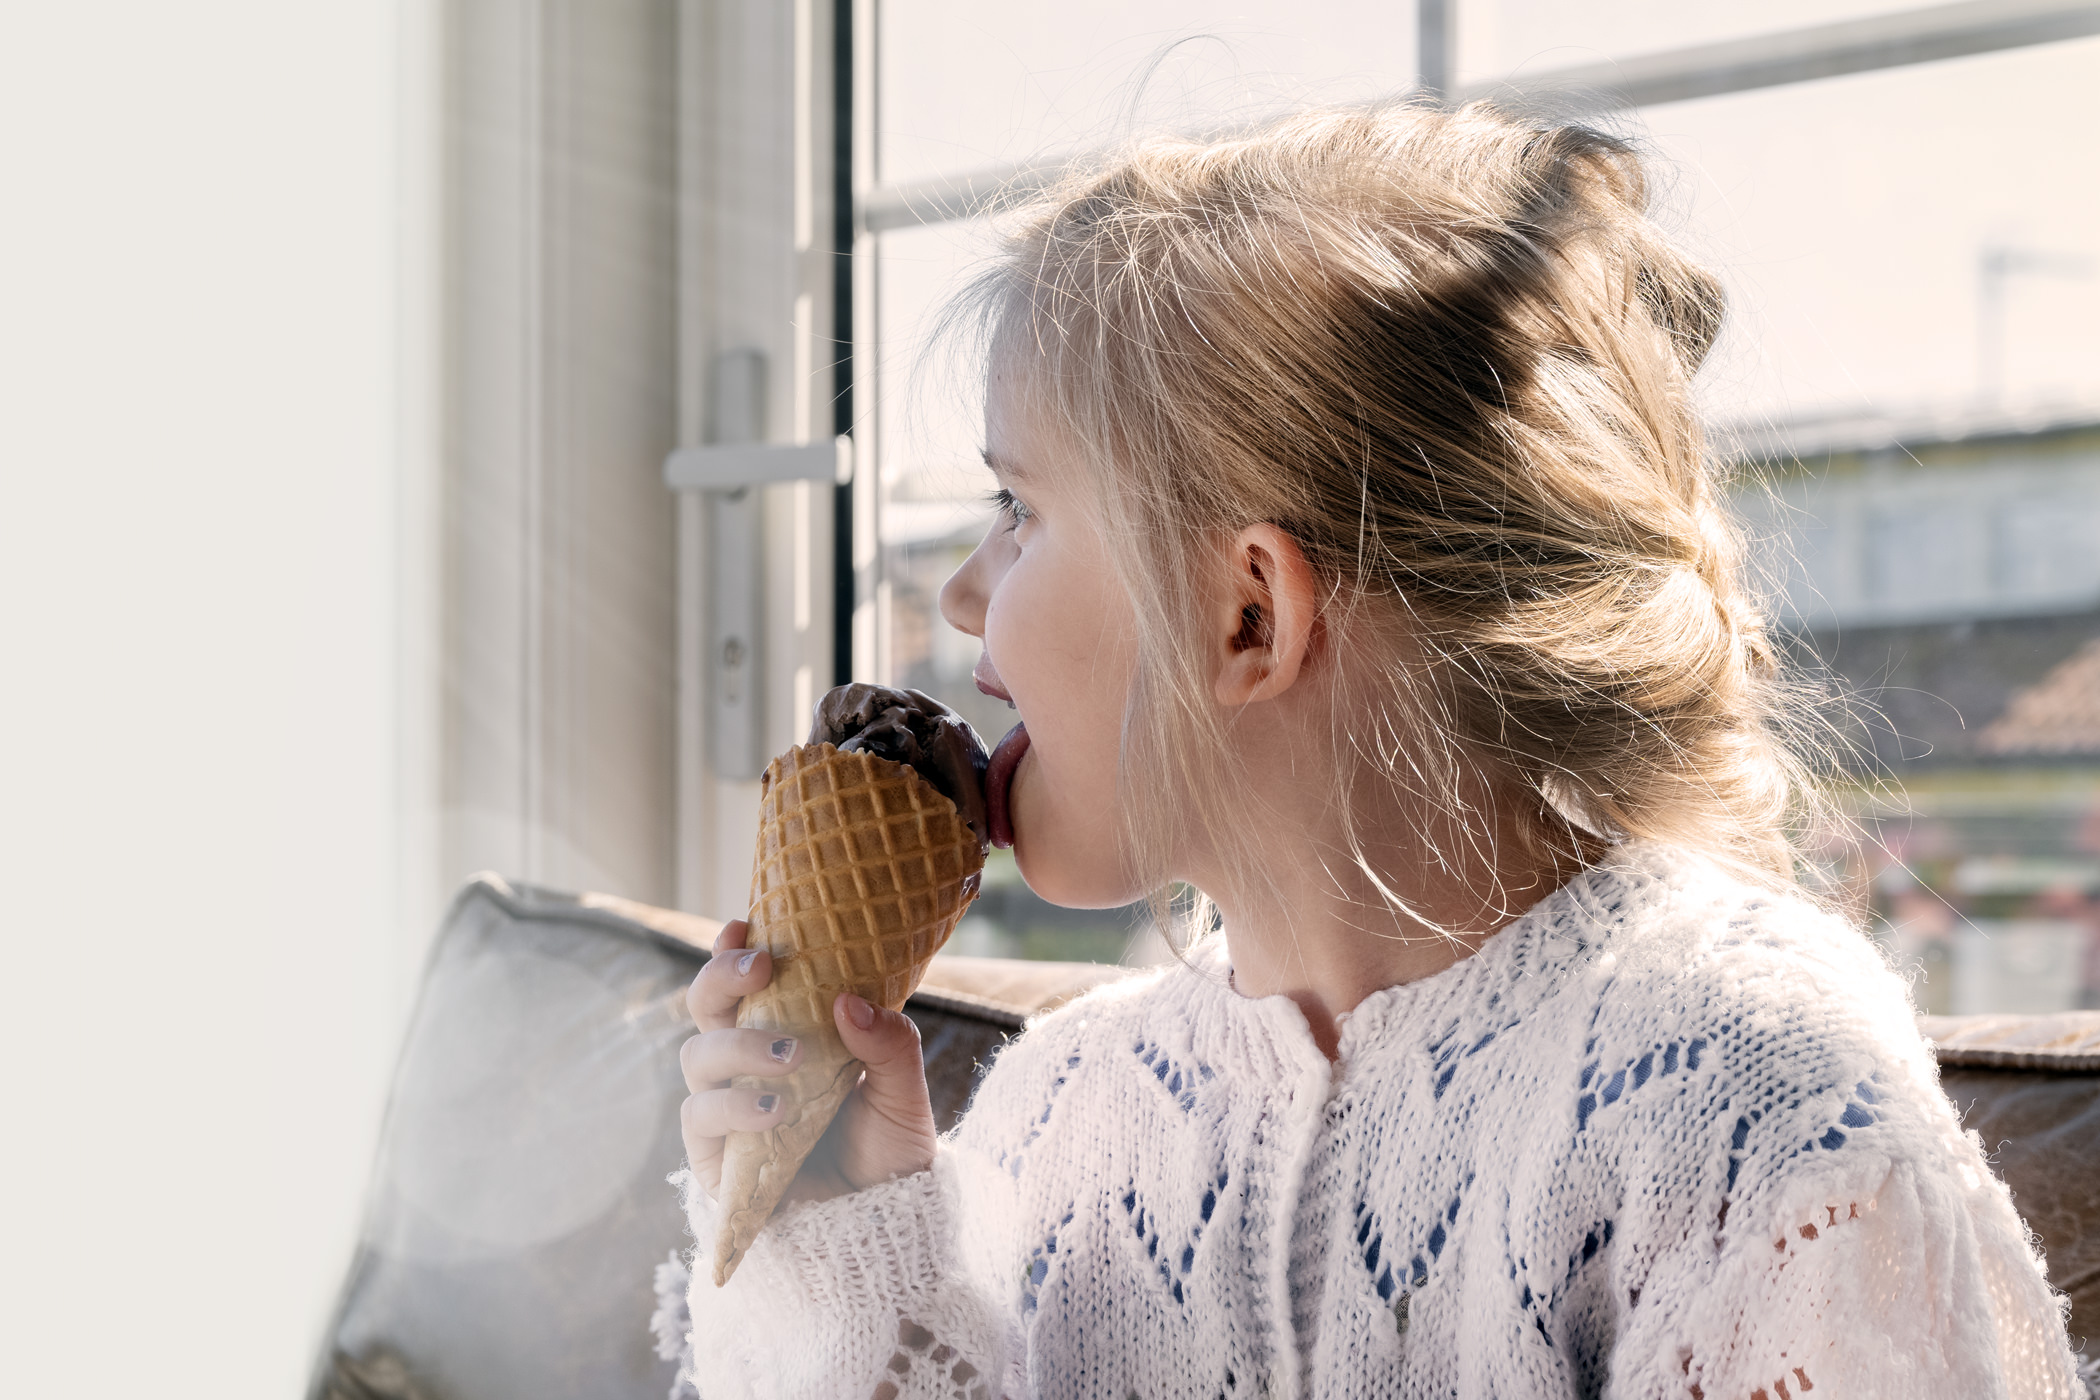 Flicka äter glass på Hotell Furusund